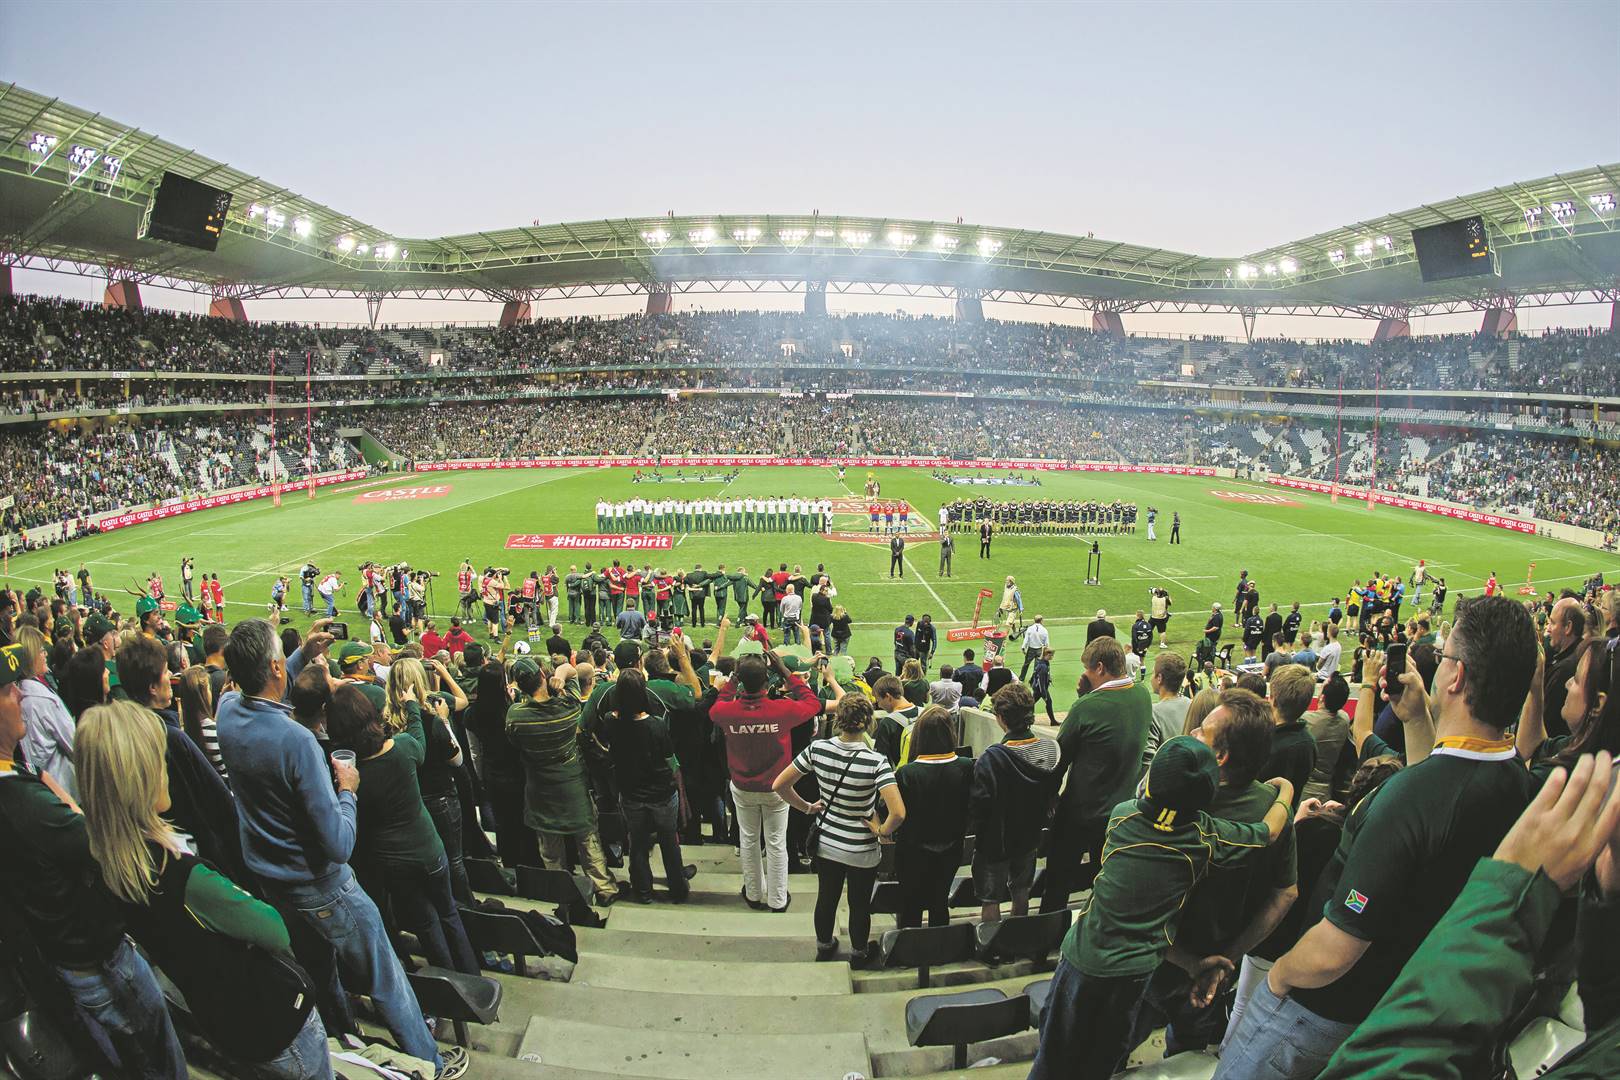 Die Mbombela-stadion in Nelspruit voor die begin van die toets tussen Suid-Afrika en Skotland in 2014.  Foto: Manus van Dyk, Gallo Images